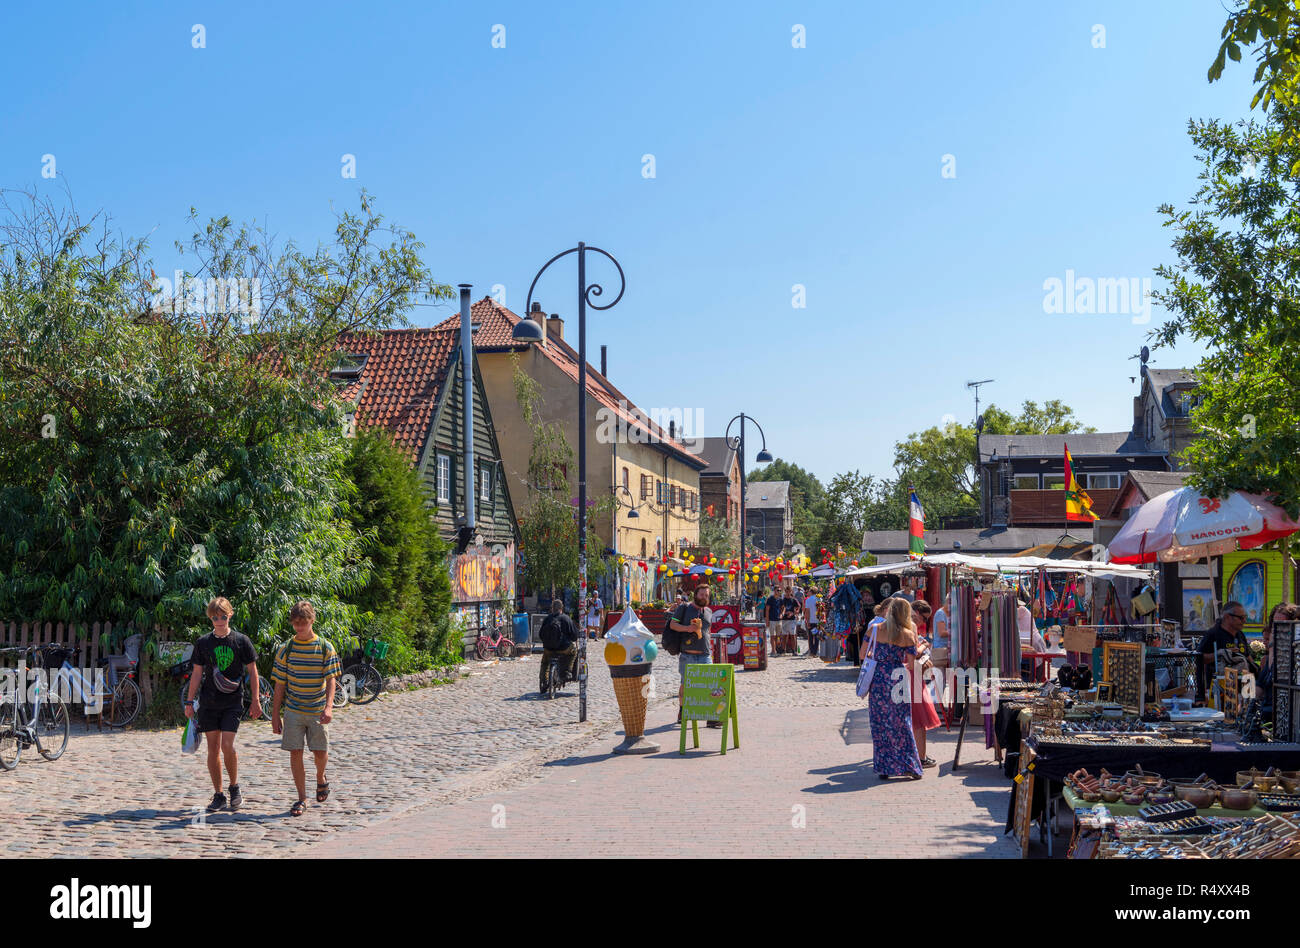 Market stalls on Pusher Street in Freetown Christiania, a commune in Christianshavn, Copenhagen, Denmark Stock Photo